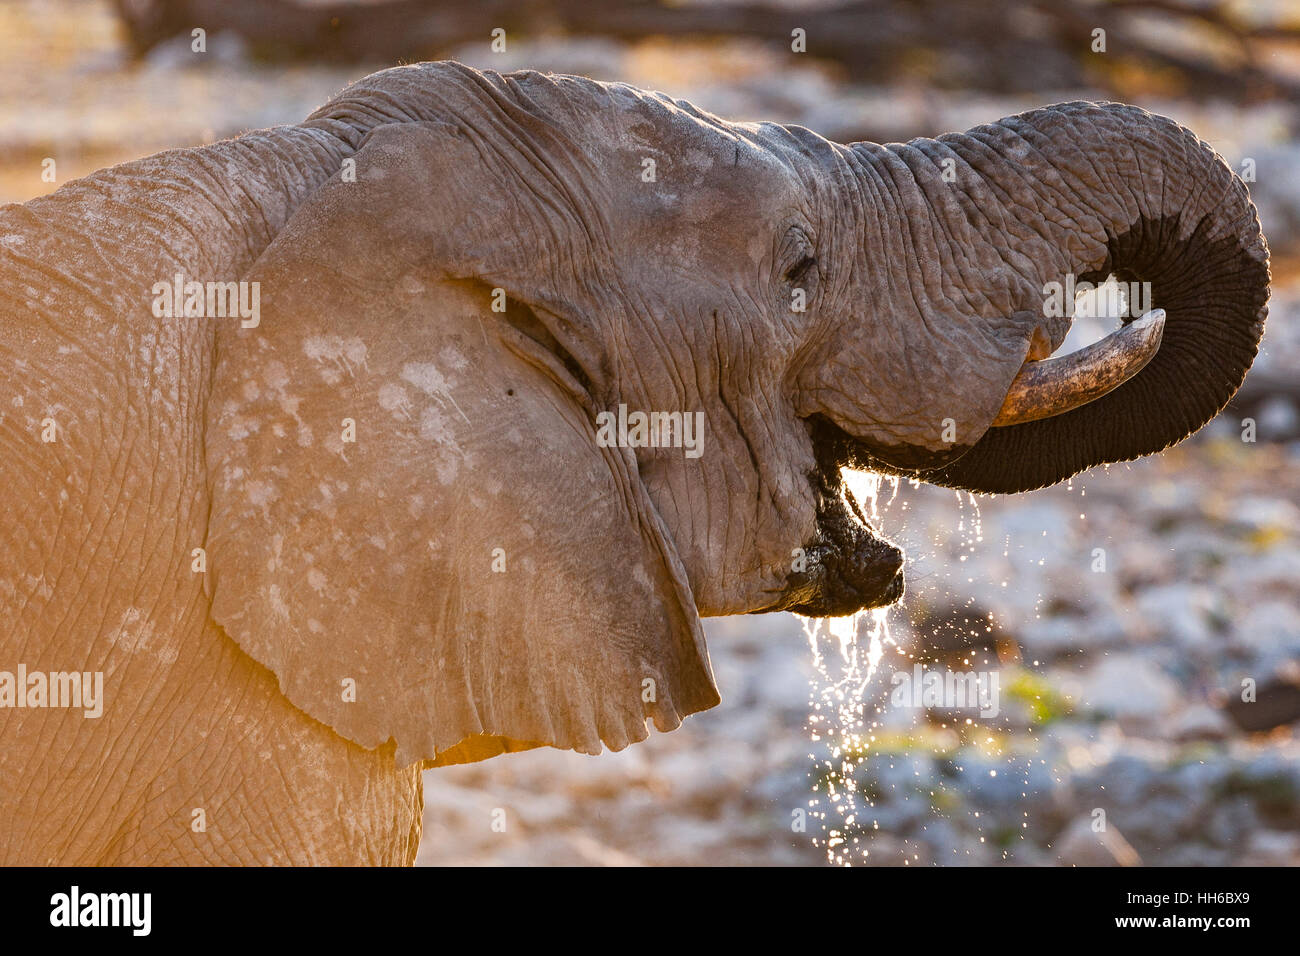 Etosha National Park, Namibia. African elephant drinking. Stock Photo